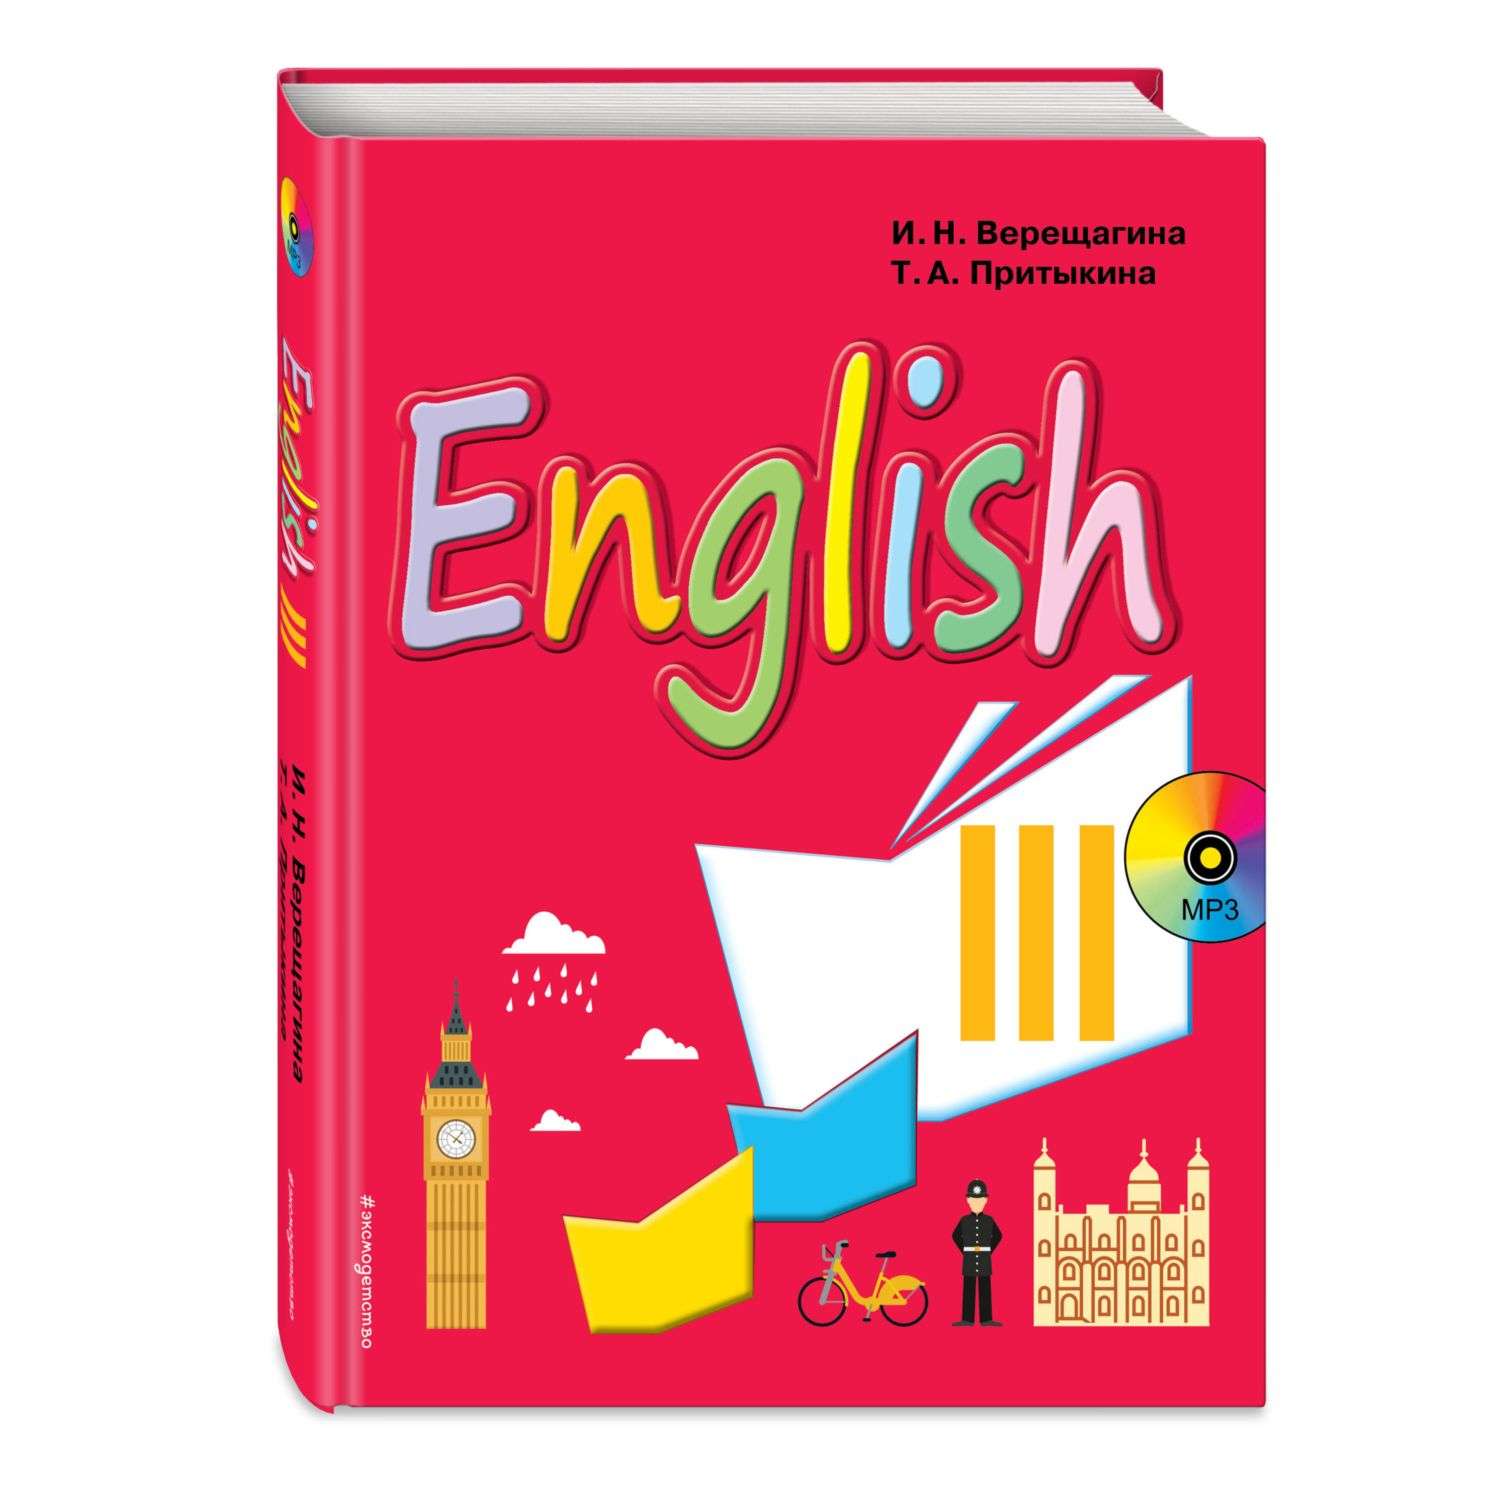 Книга Эксмо Английский язык III класс Учебник компакт-диск MP3 - фото 1